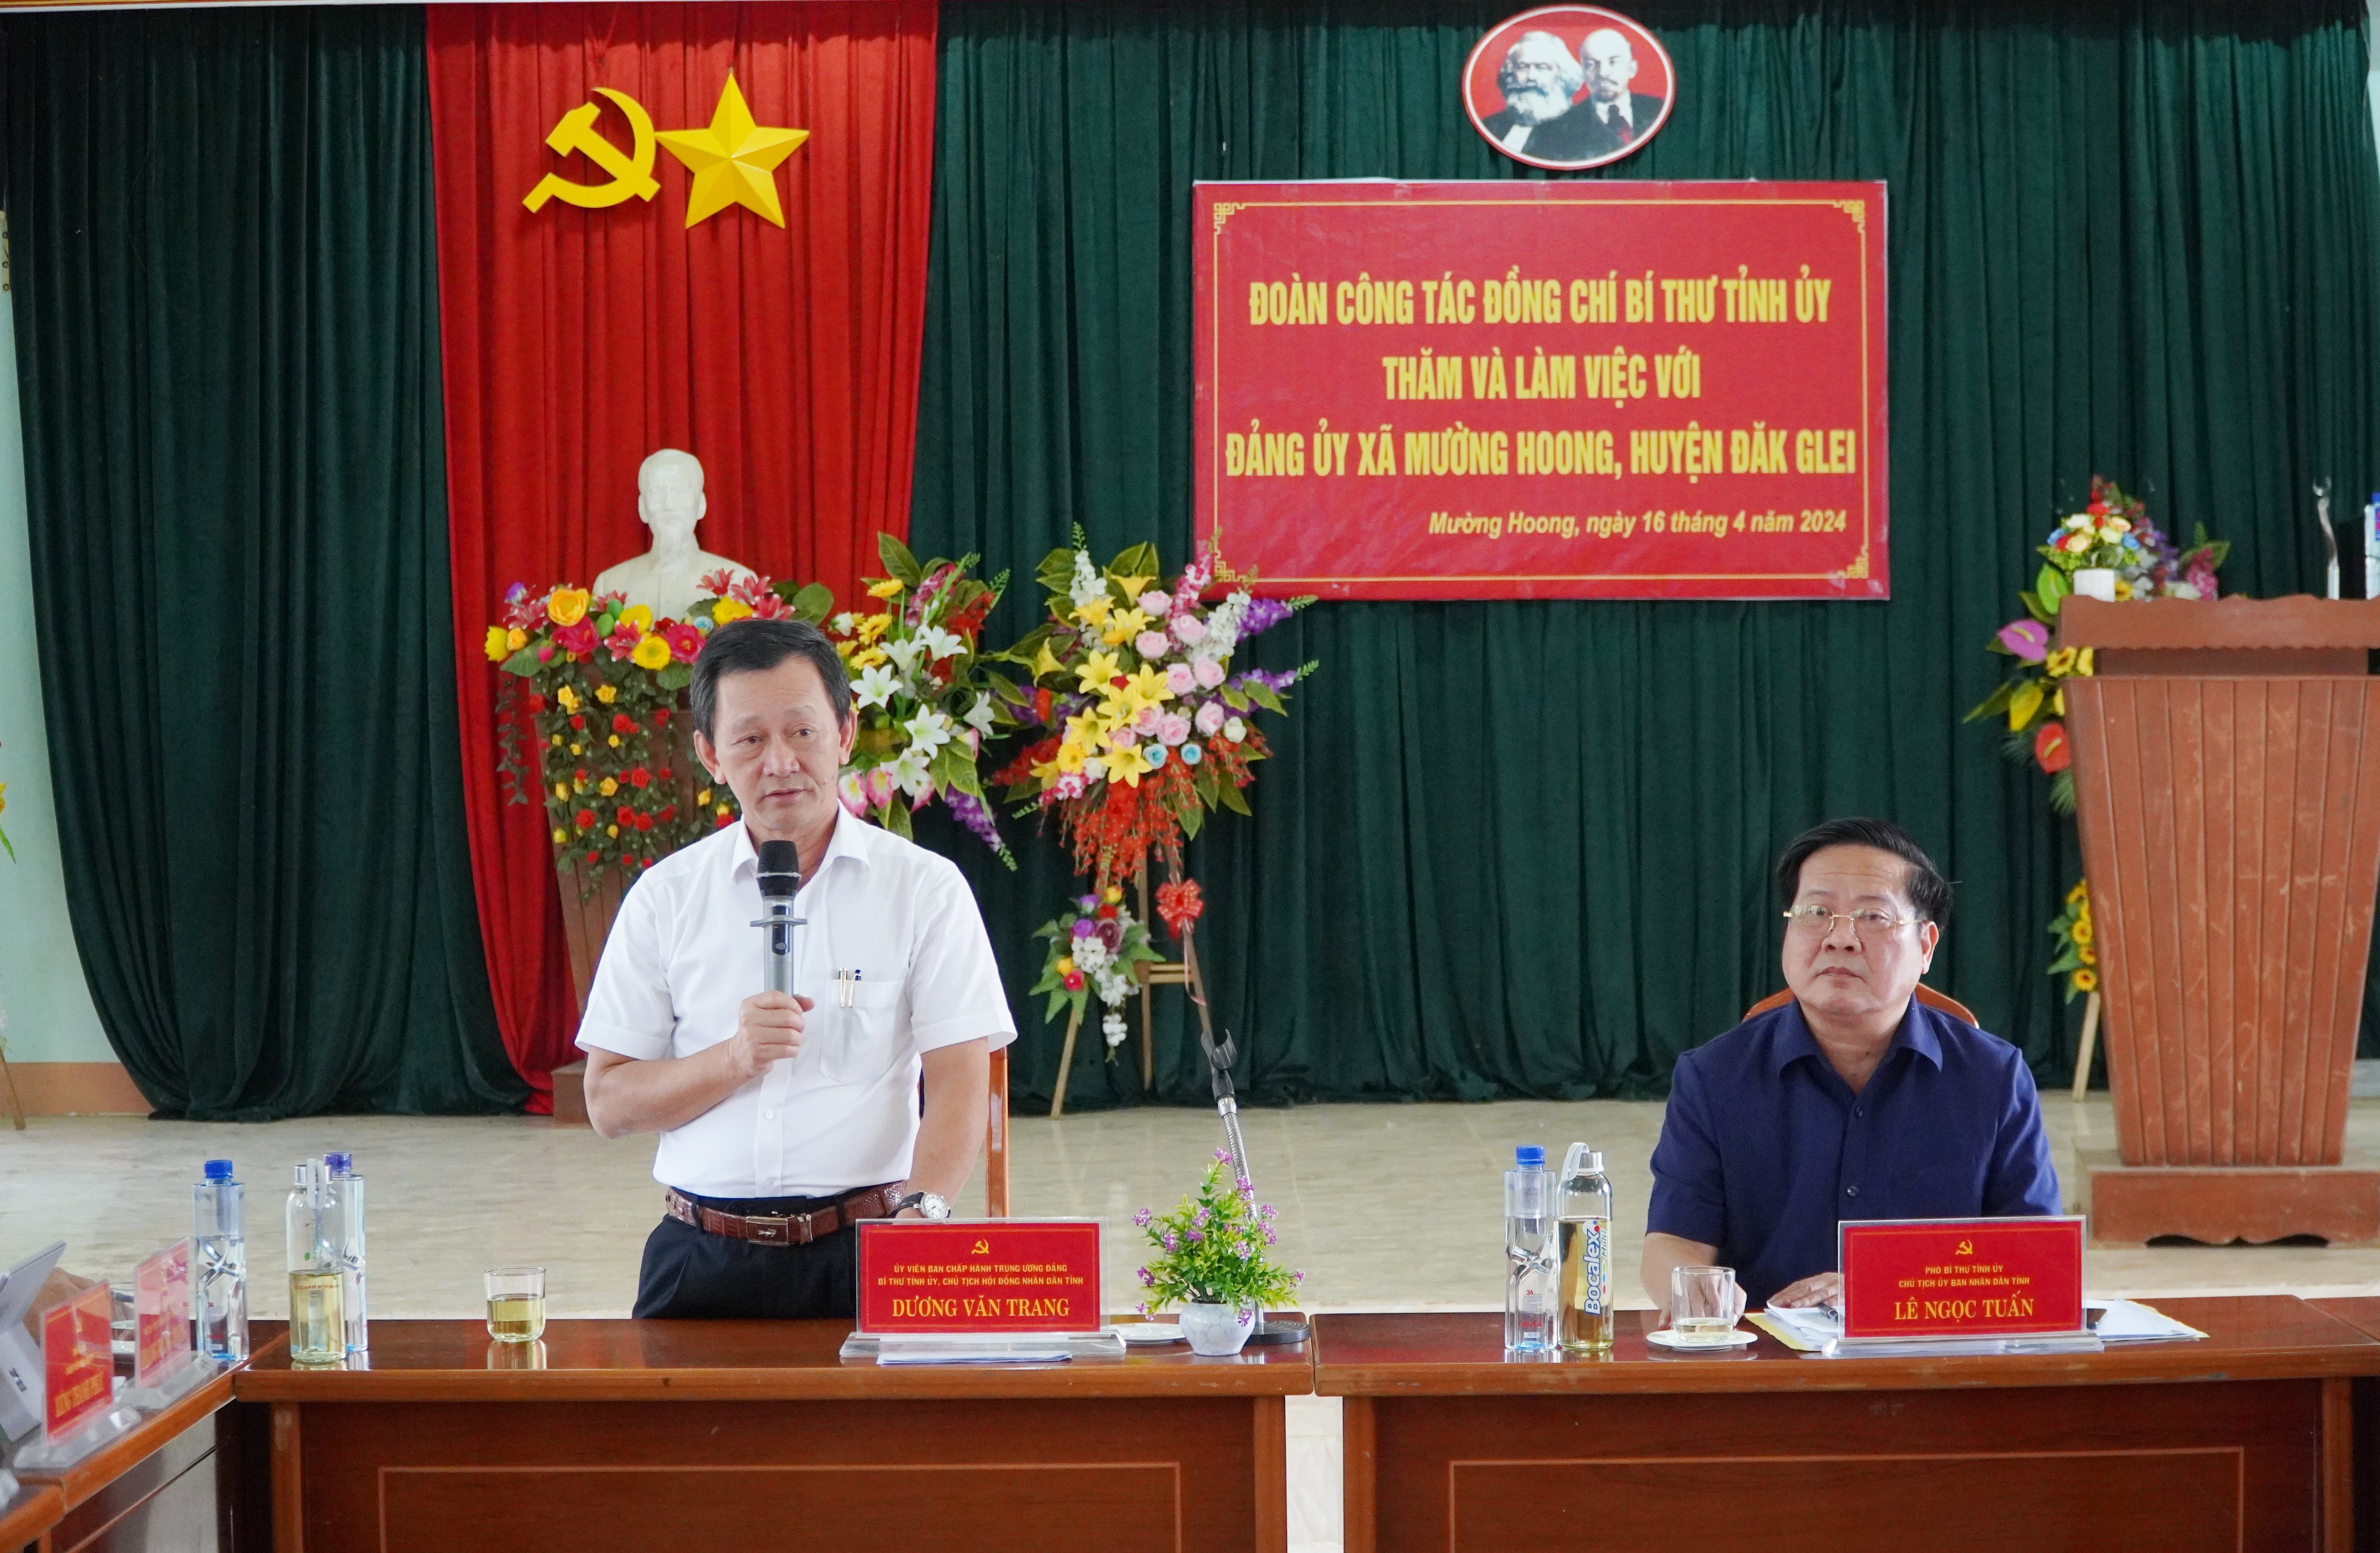 Bí thư Tỉnh ủy Dương Văn Trang làm việc tại xã Mường Hoong